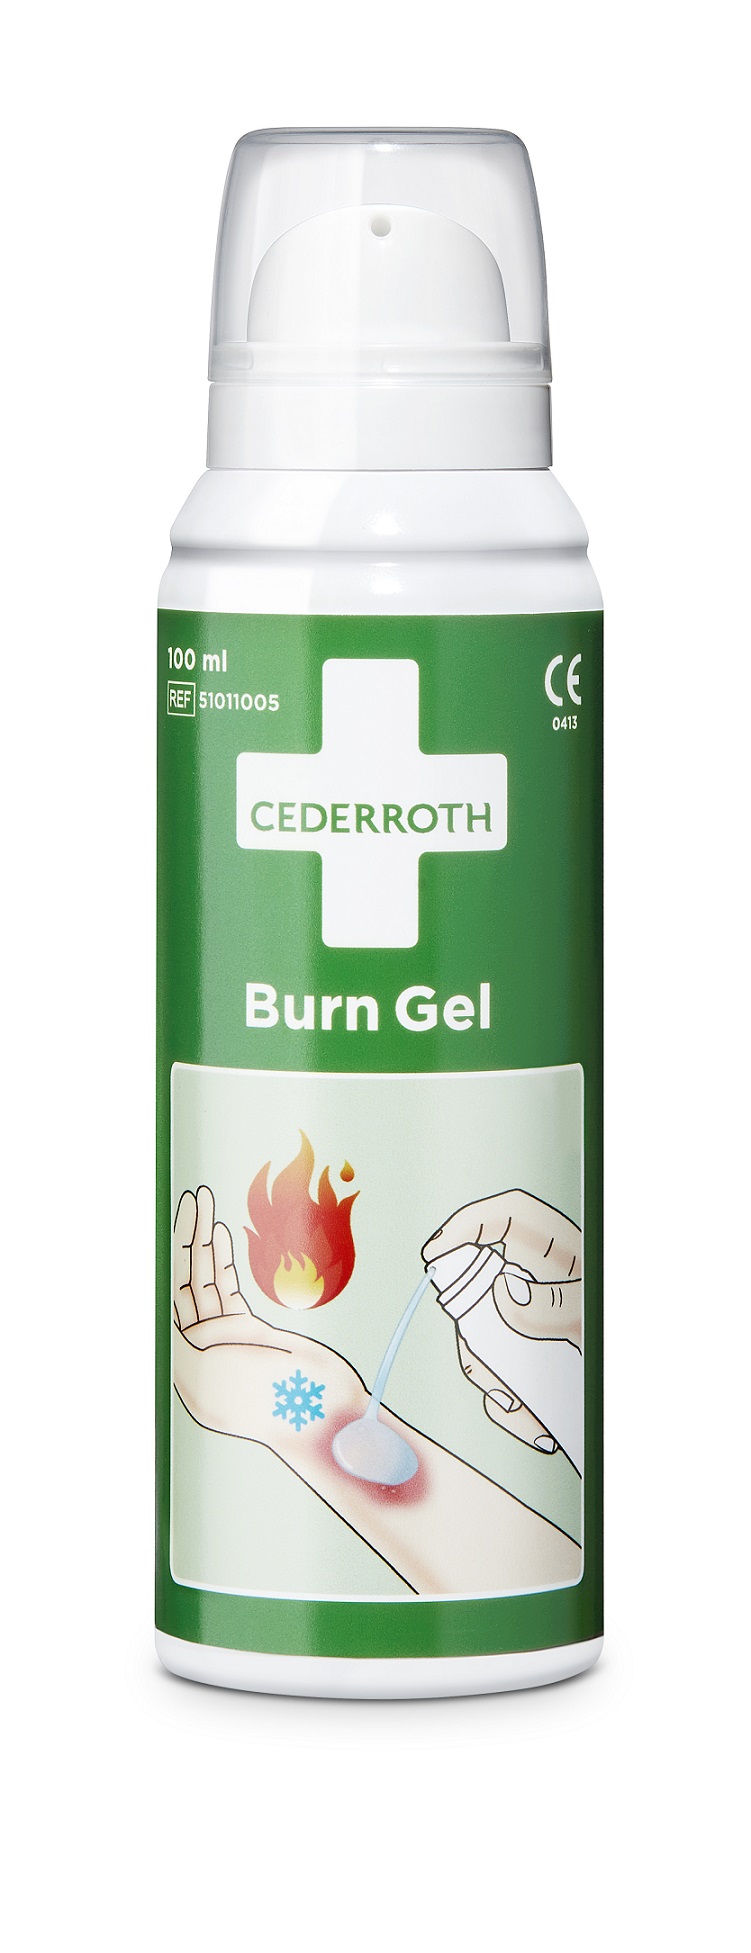 Cederroth Burn Gel Spray 100ml Pumpflasche